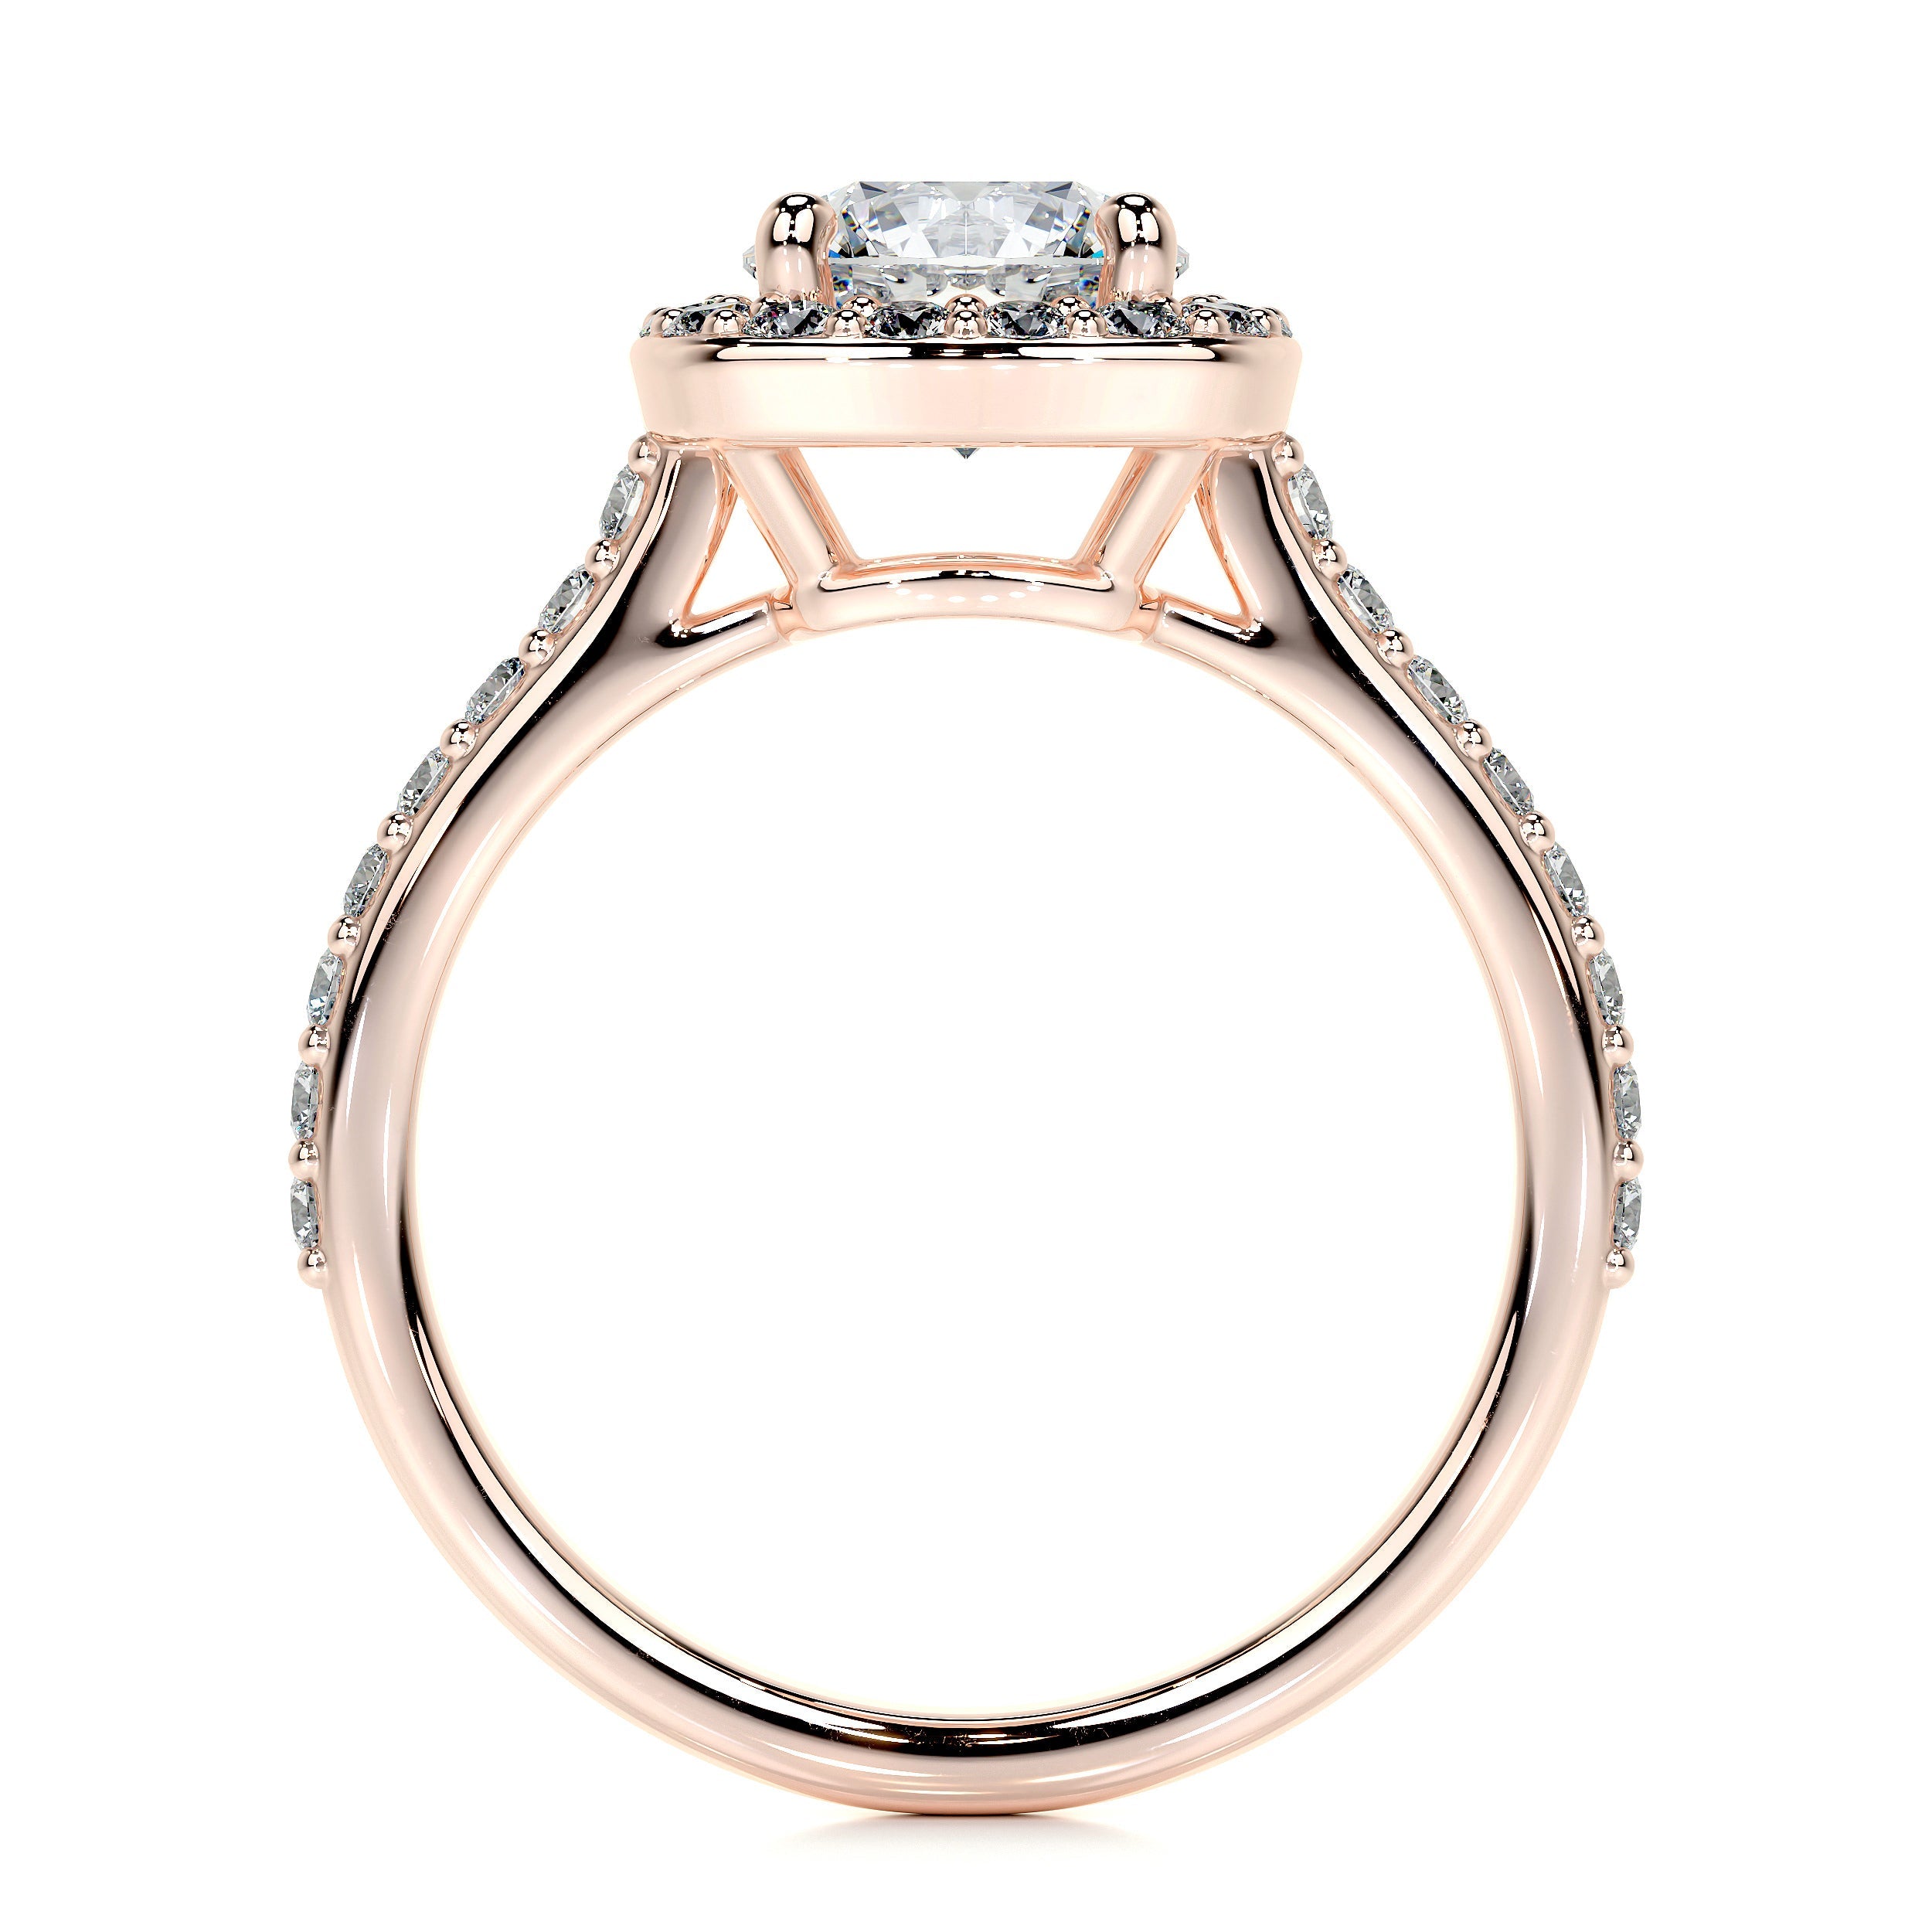 Paisley Lab Grown Diamond Ring   (2 Carat) -14K Rose Gold